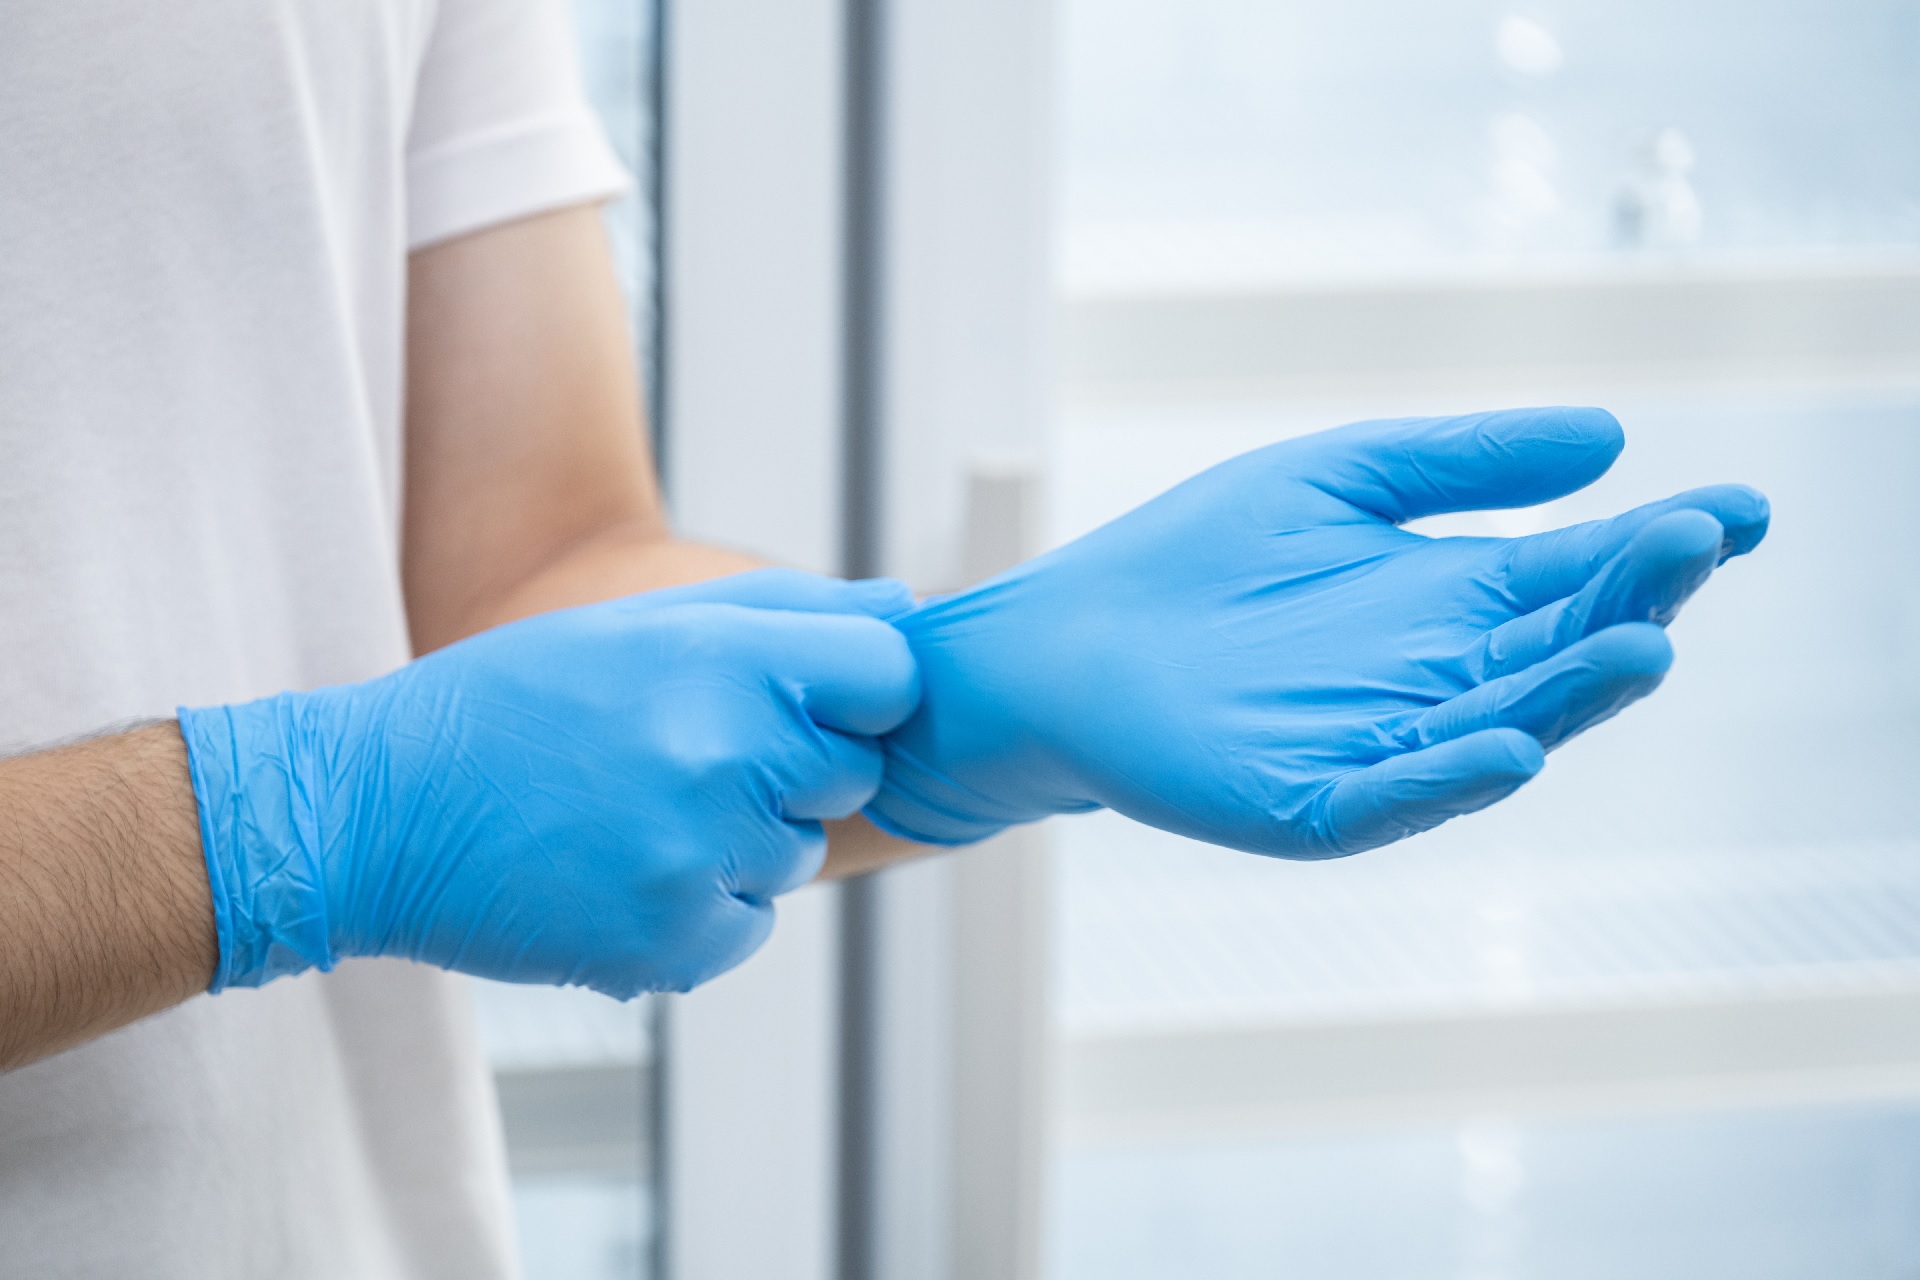 fejre Governable Penneven Genbrugelige handsker skal sænke hospitalernes klimaaftryk - Ydelser -  Teknologisk Institut